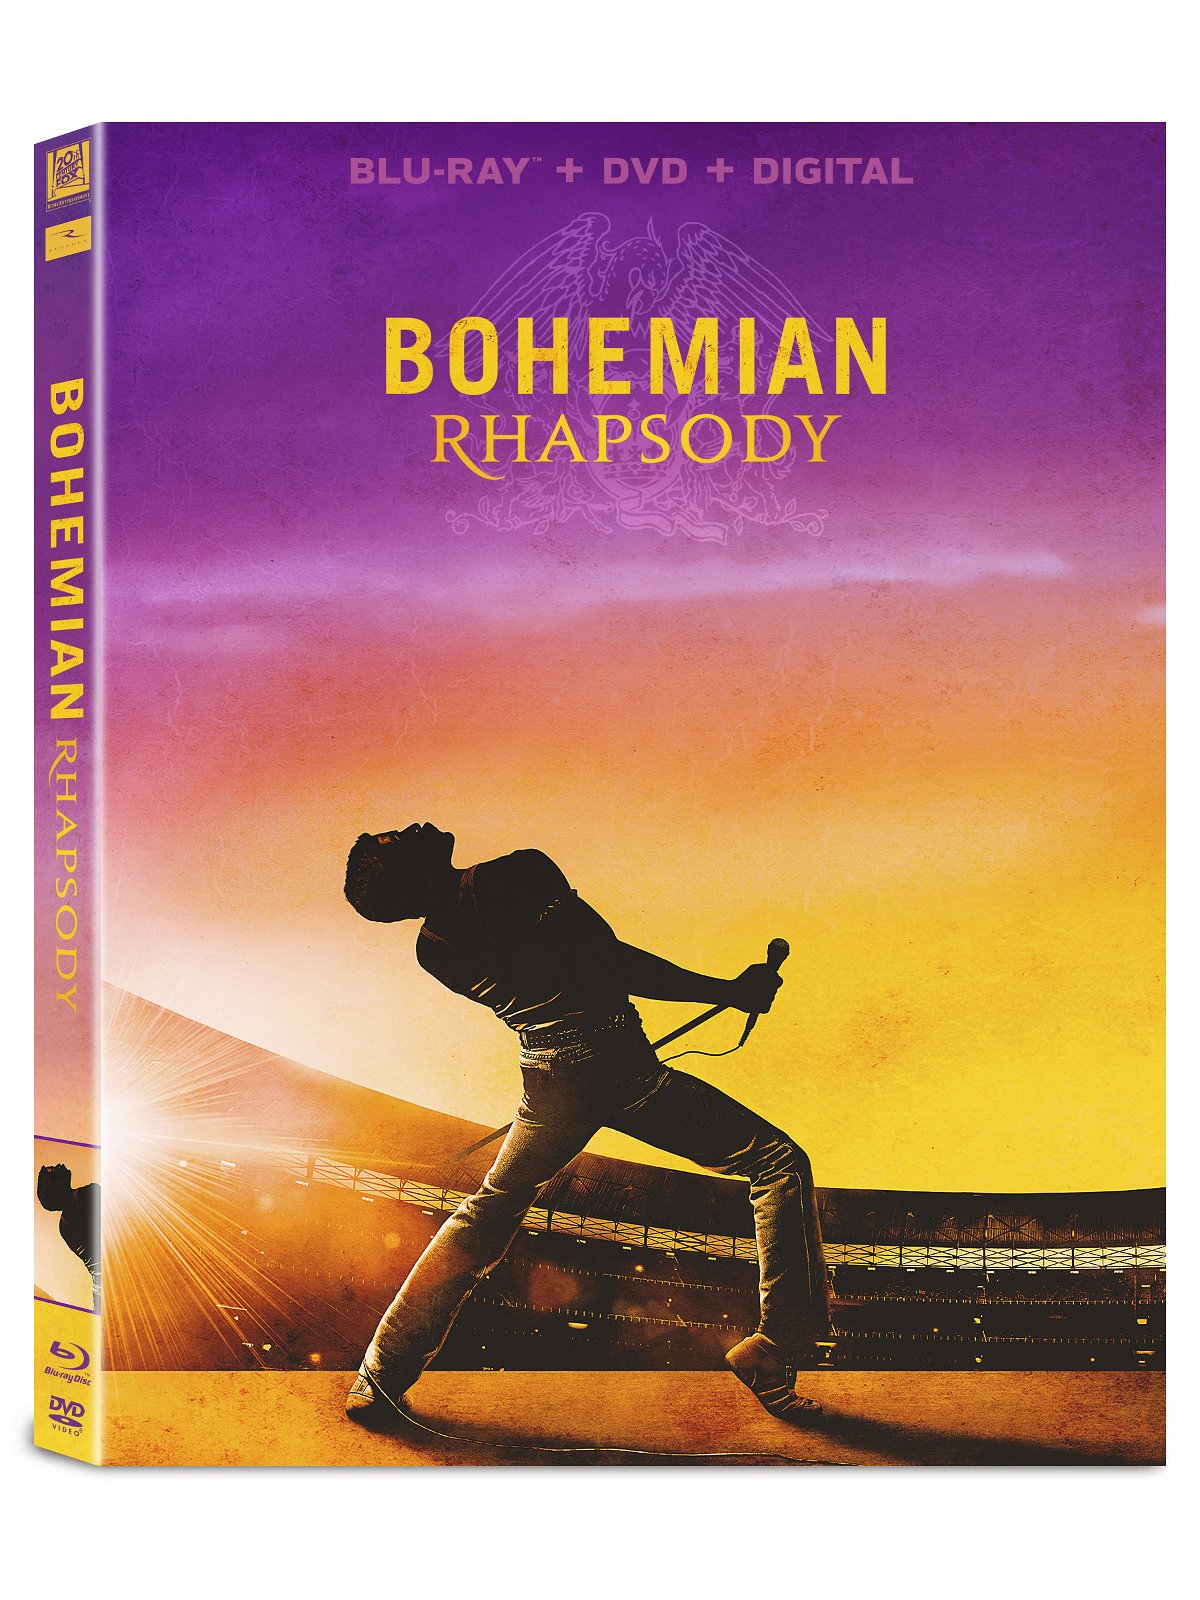 La cover dell'edizione home video di Bohemian Rhapsody